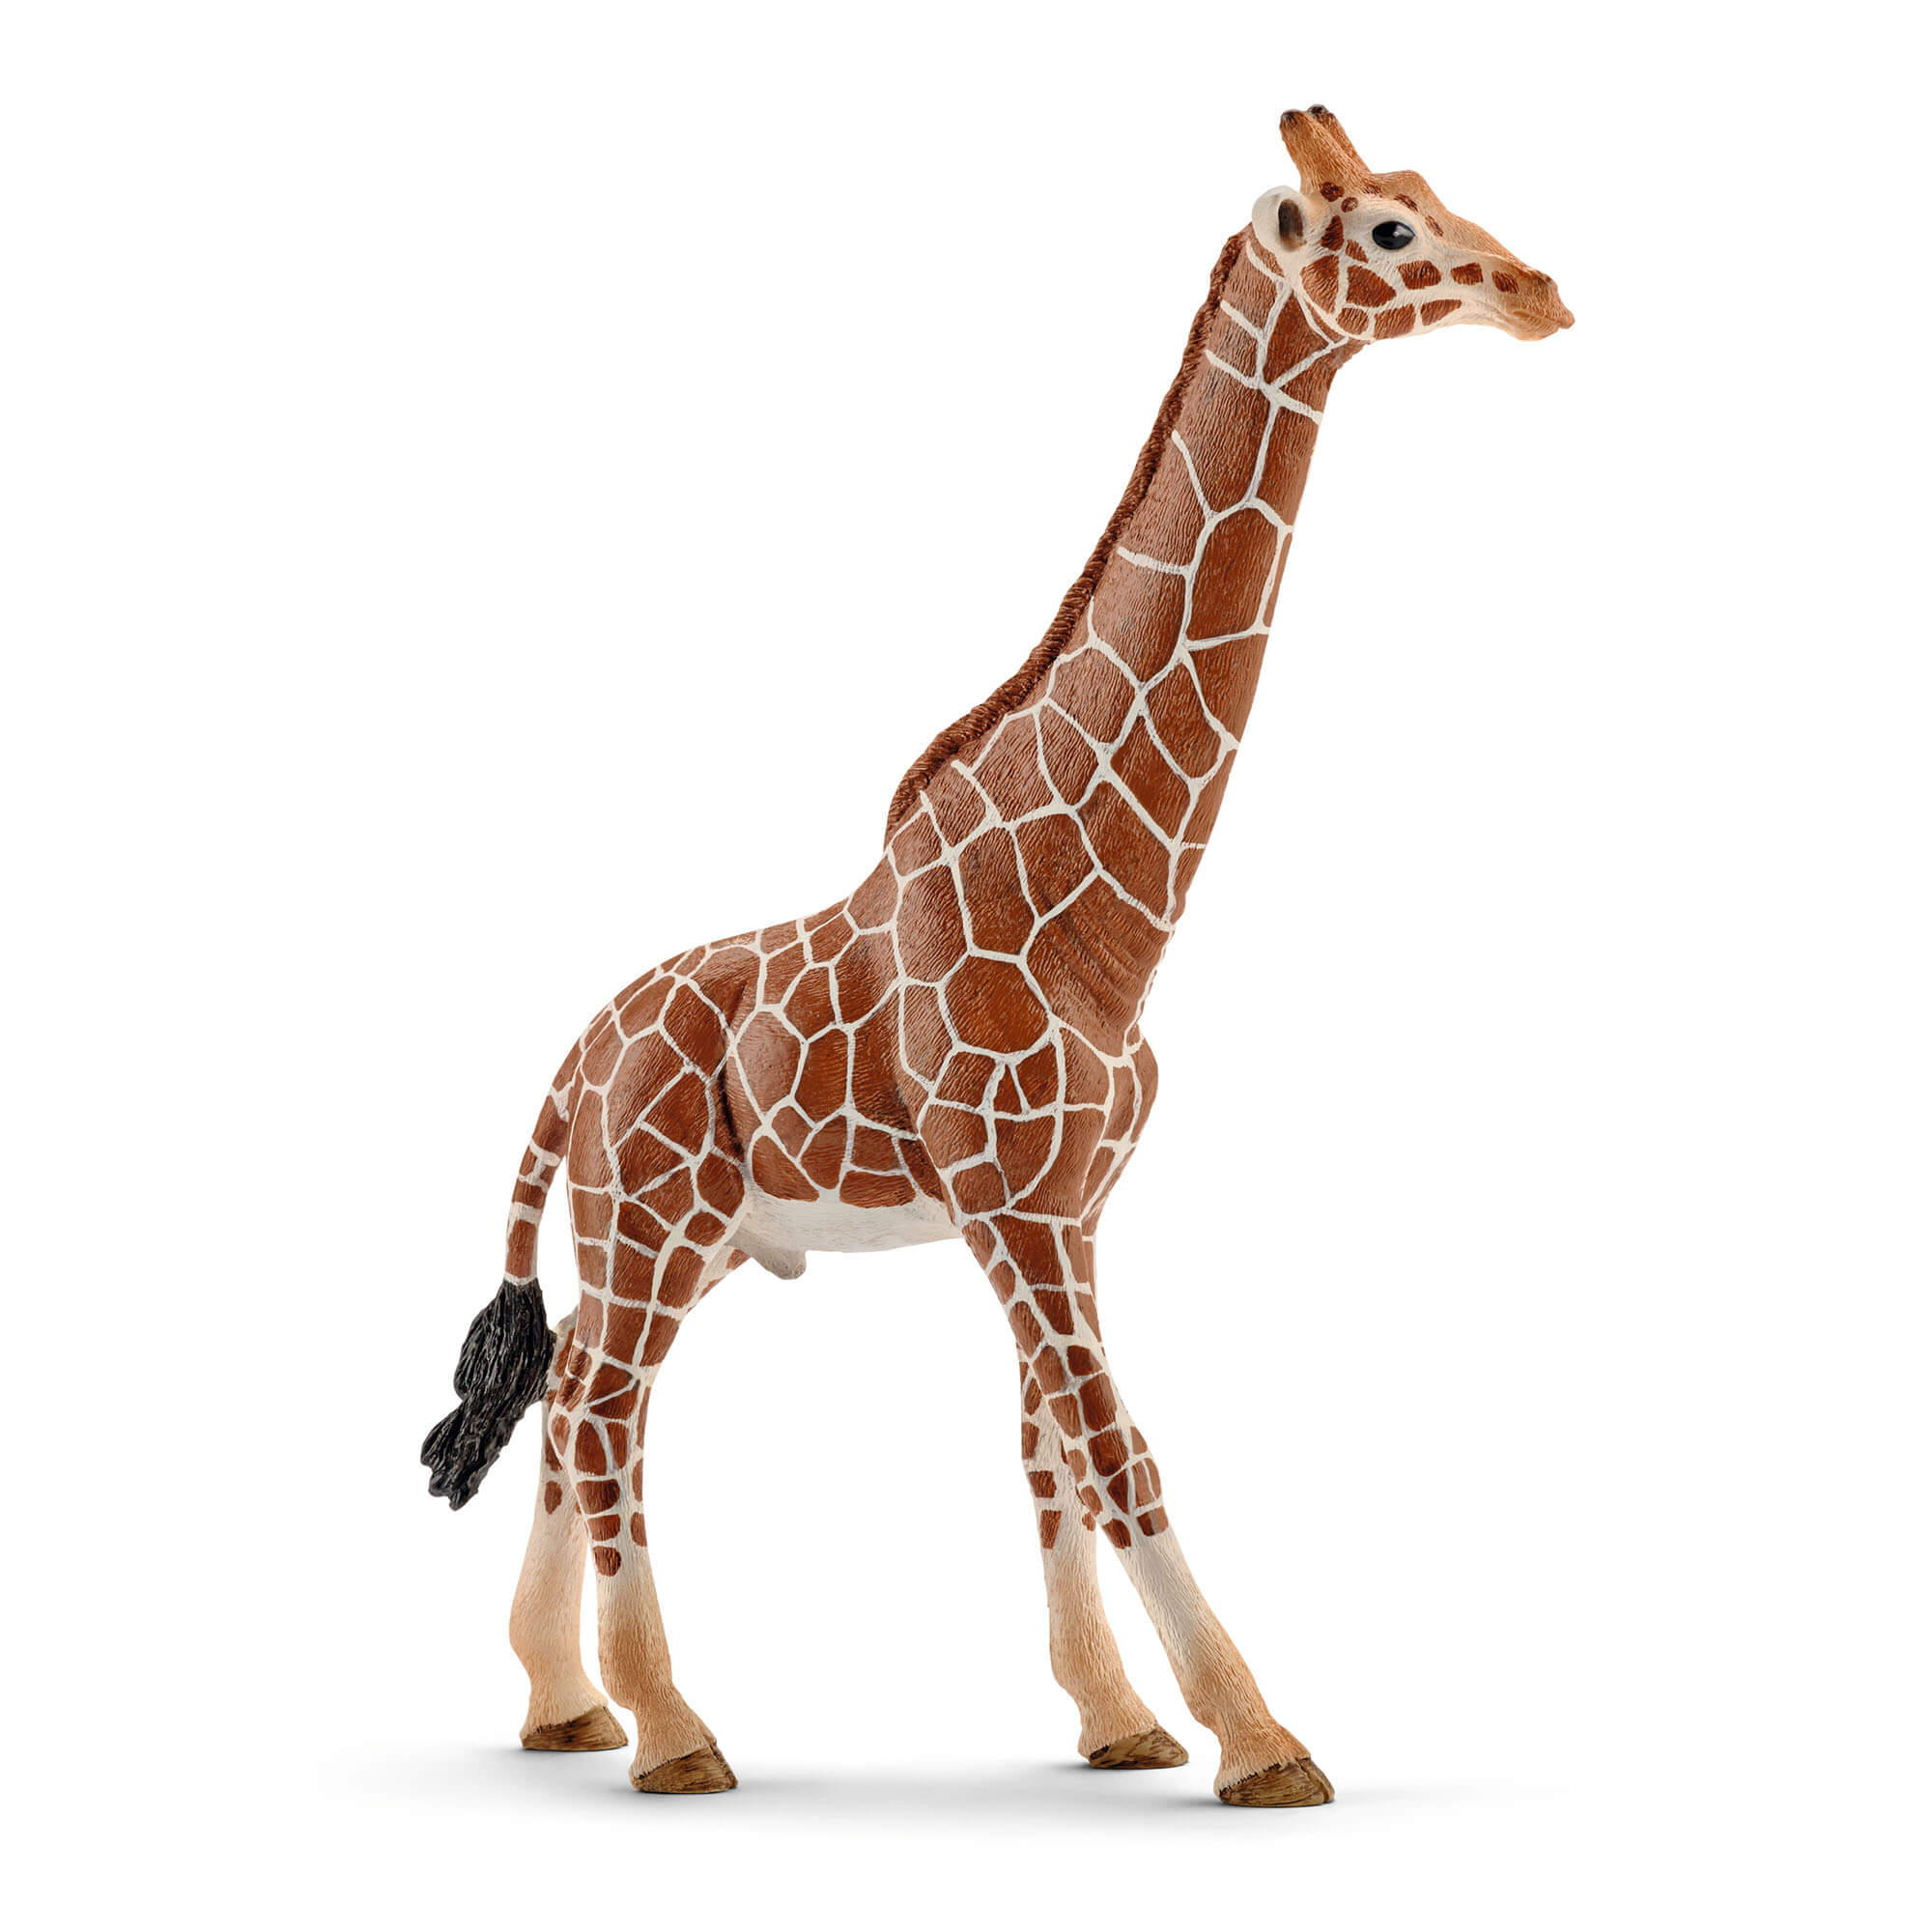 Schleich Wild Life Male Giraffe Animal Figure